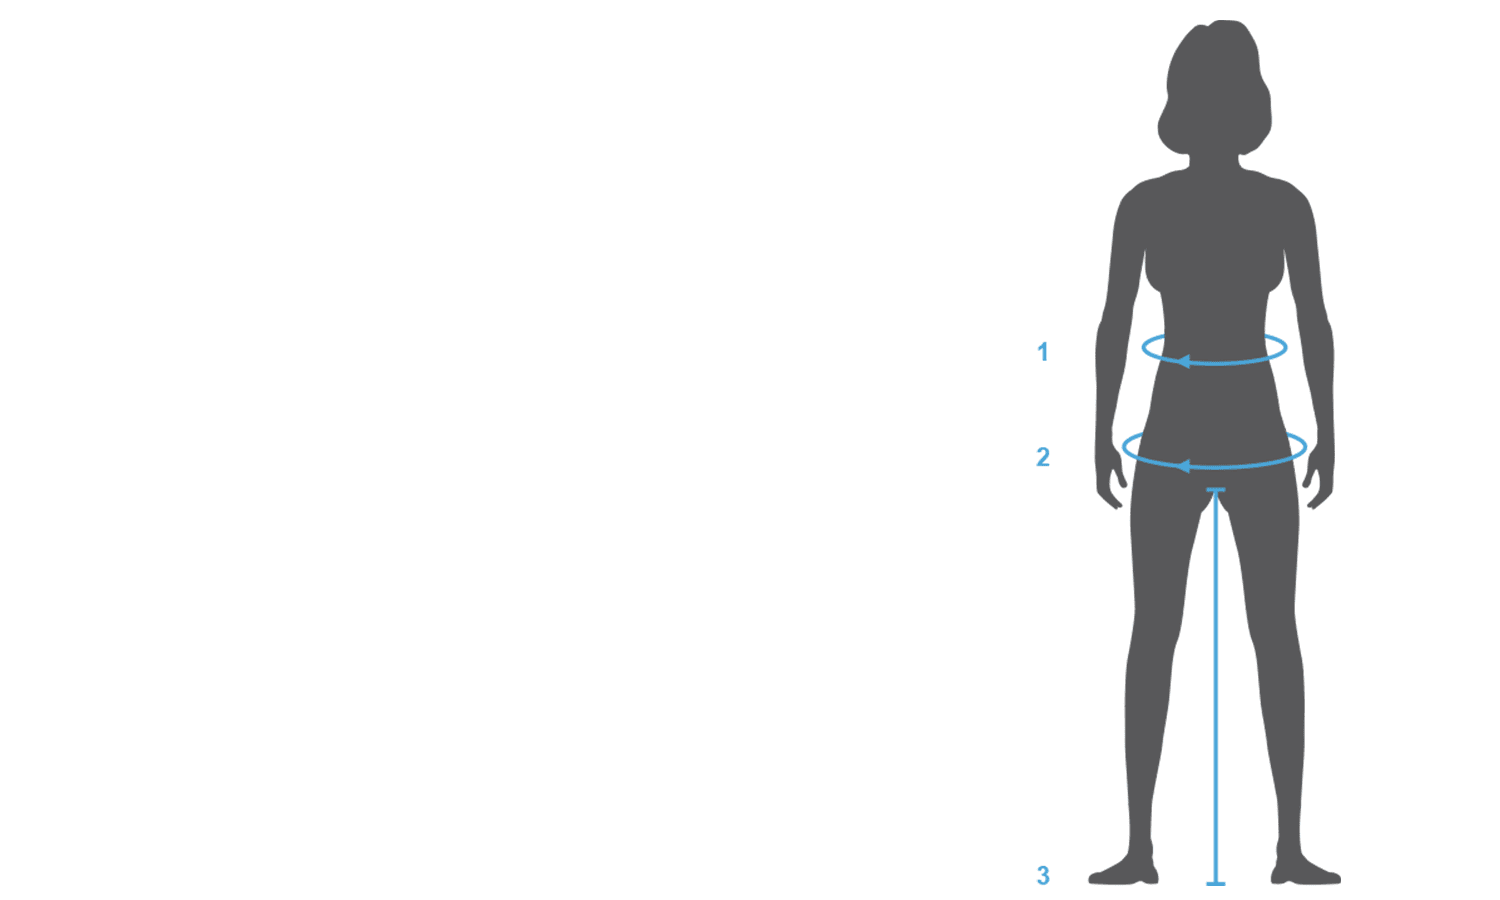 women-size-chart